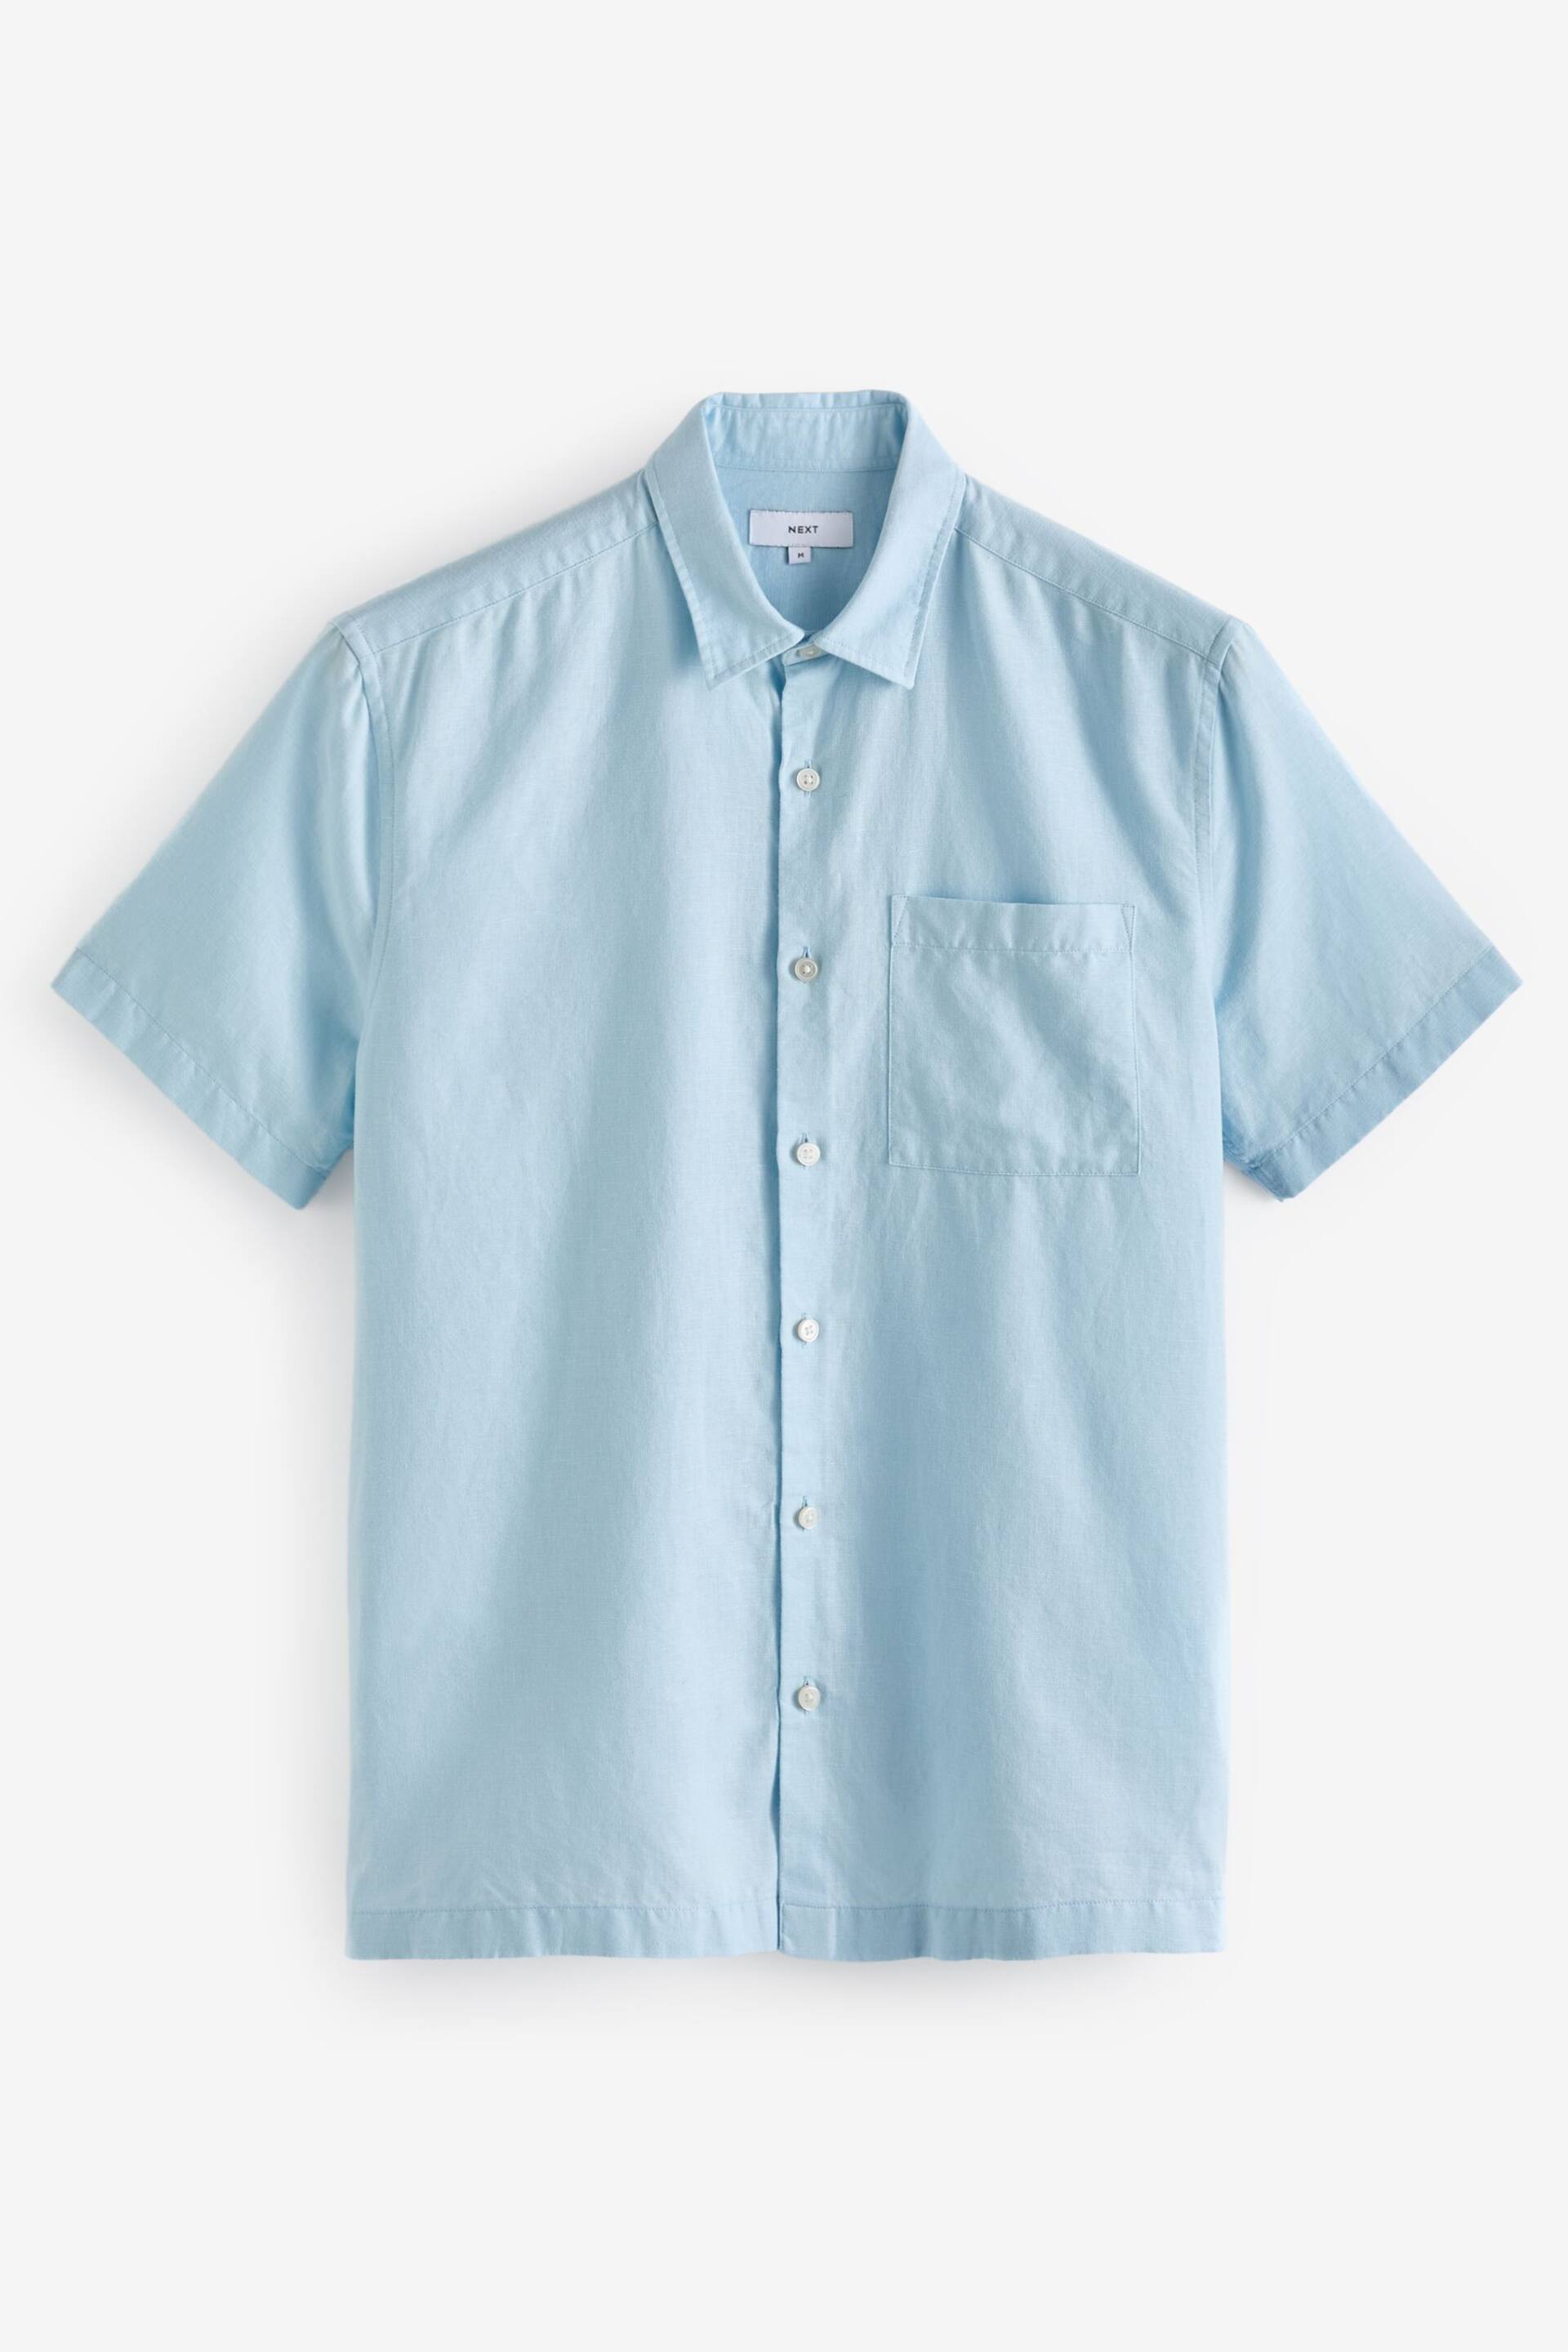 Light Blue Standard Collar Linen Blend Short Sleeve Shirt - Image 6 of 8